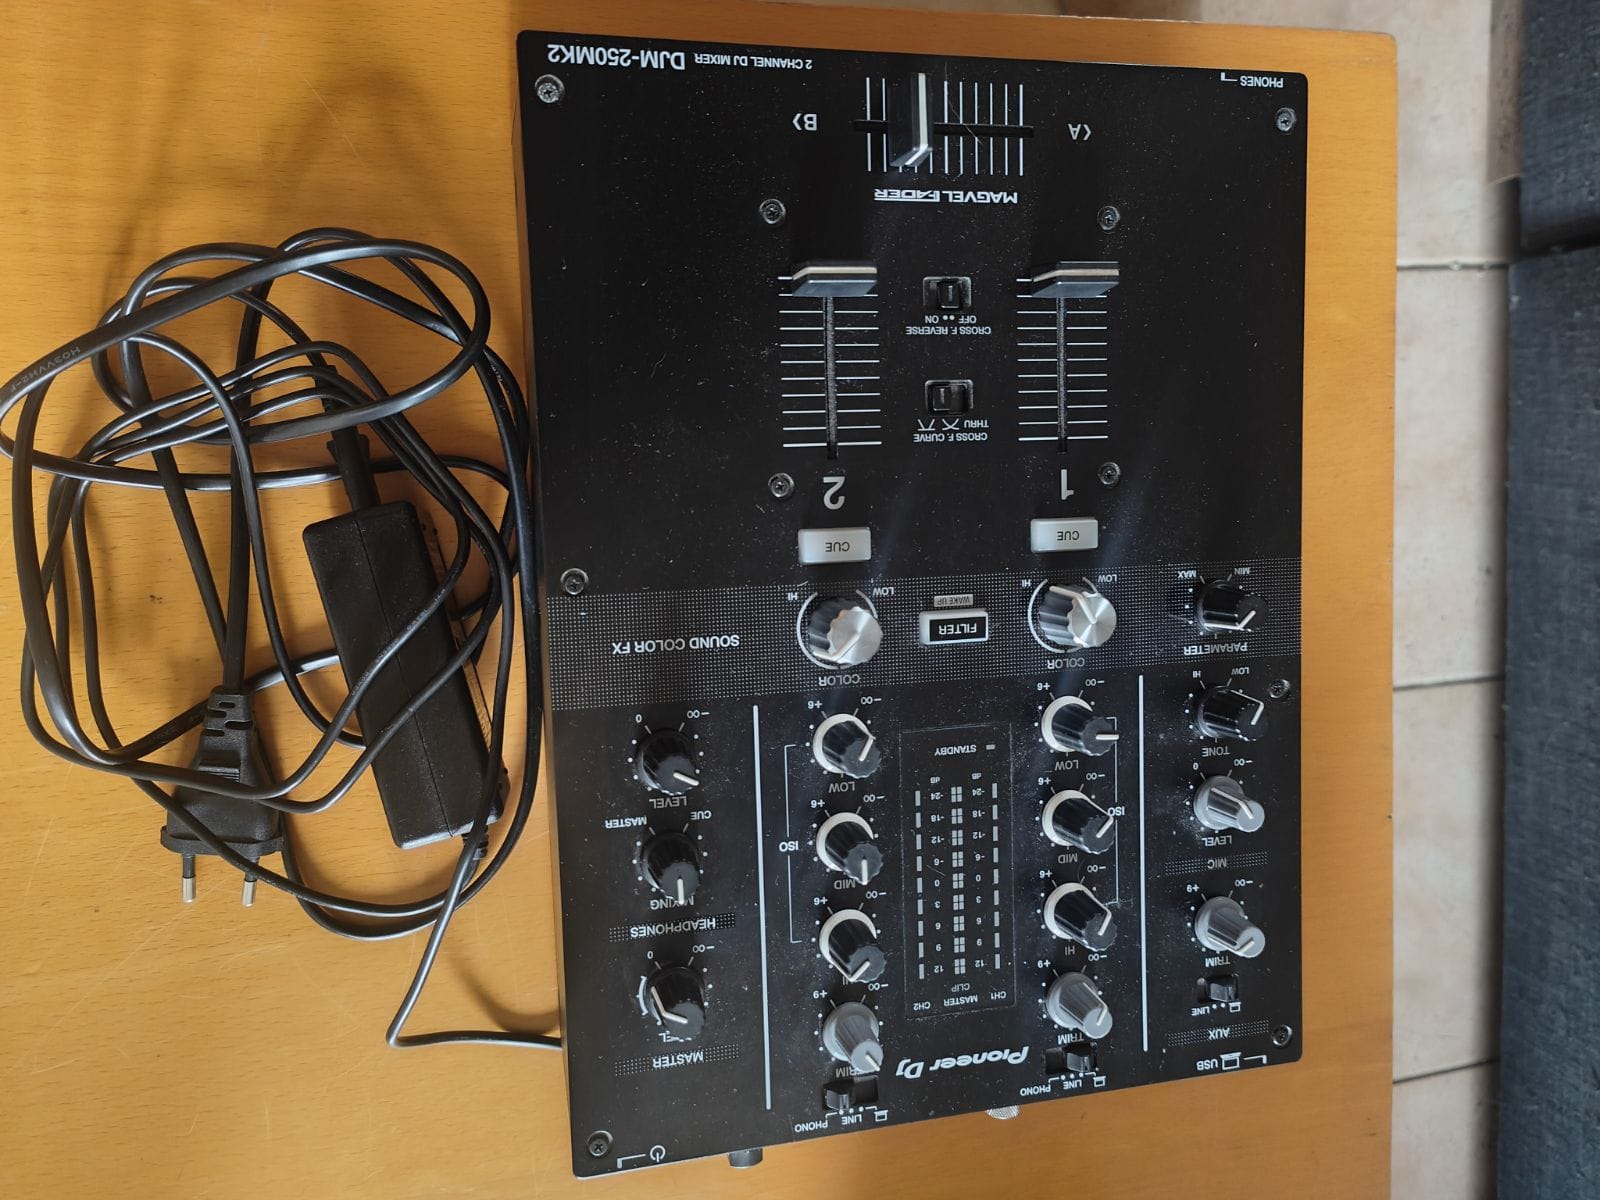 Pioneer DJ DJM-250MK2 - Table de mixage 2 voies